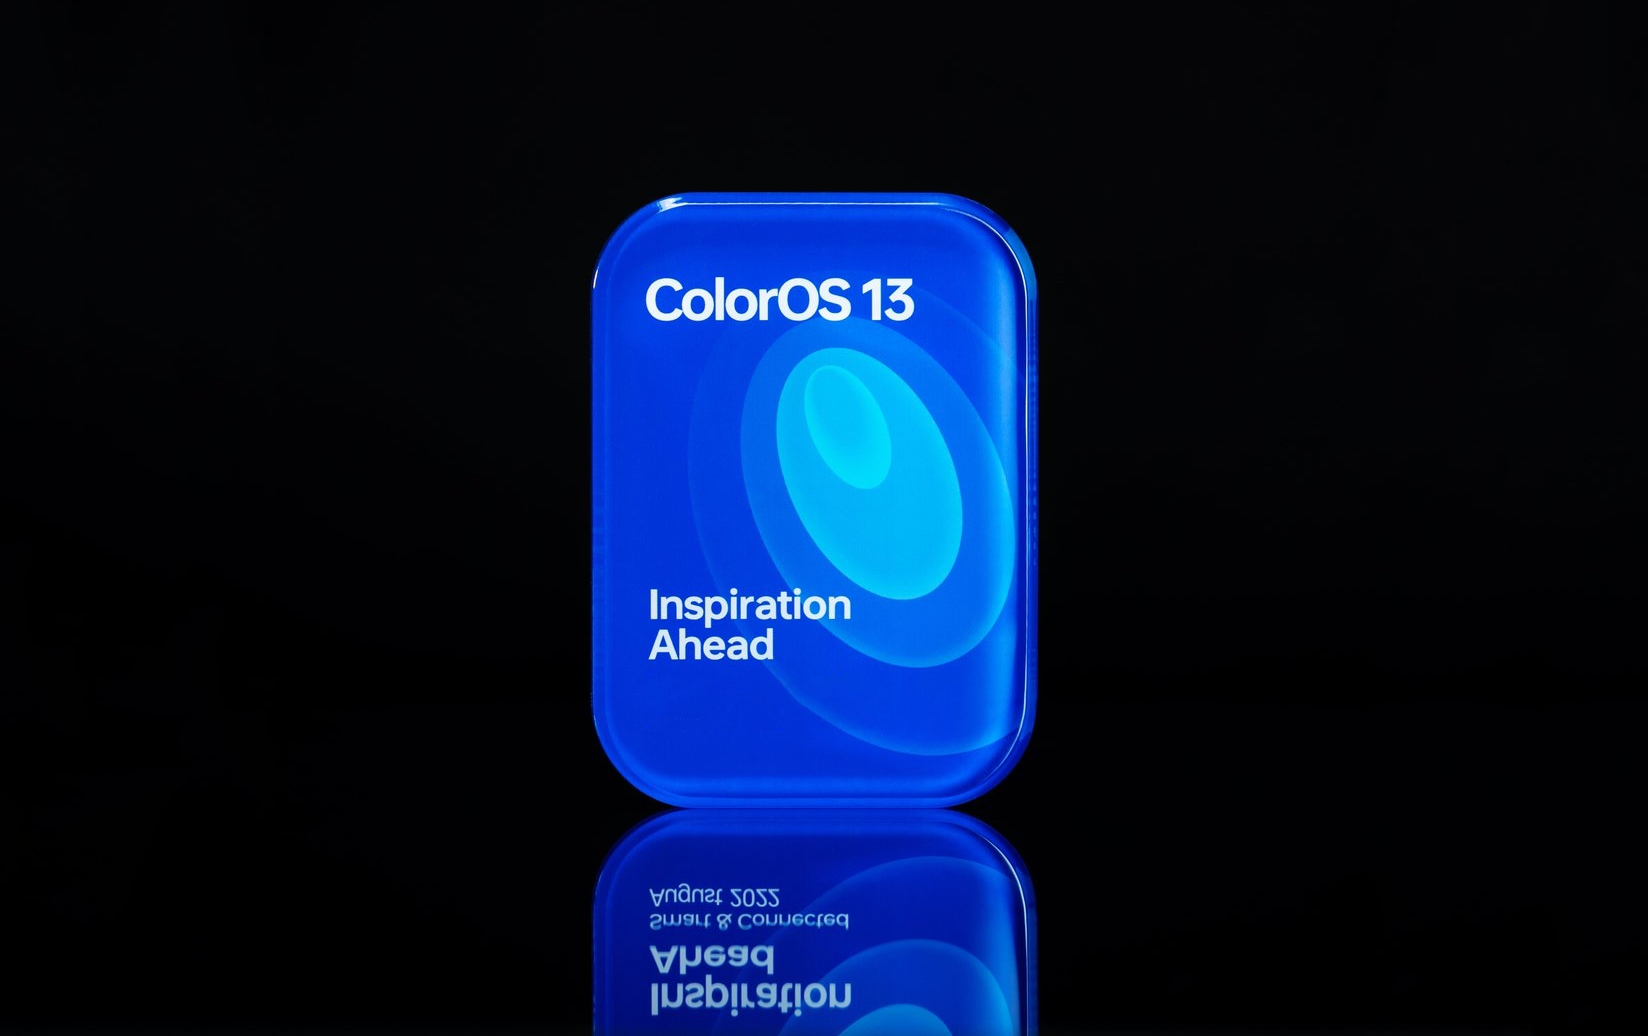 OPPO prezentuje skórkę ColorOS 13 opartą na Androidzie 13